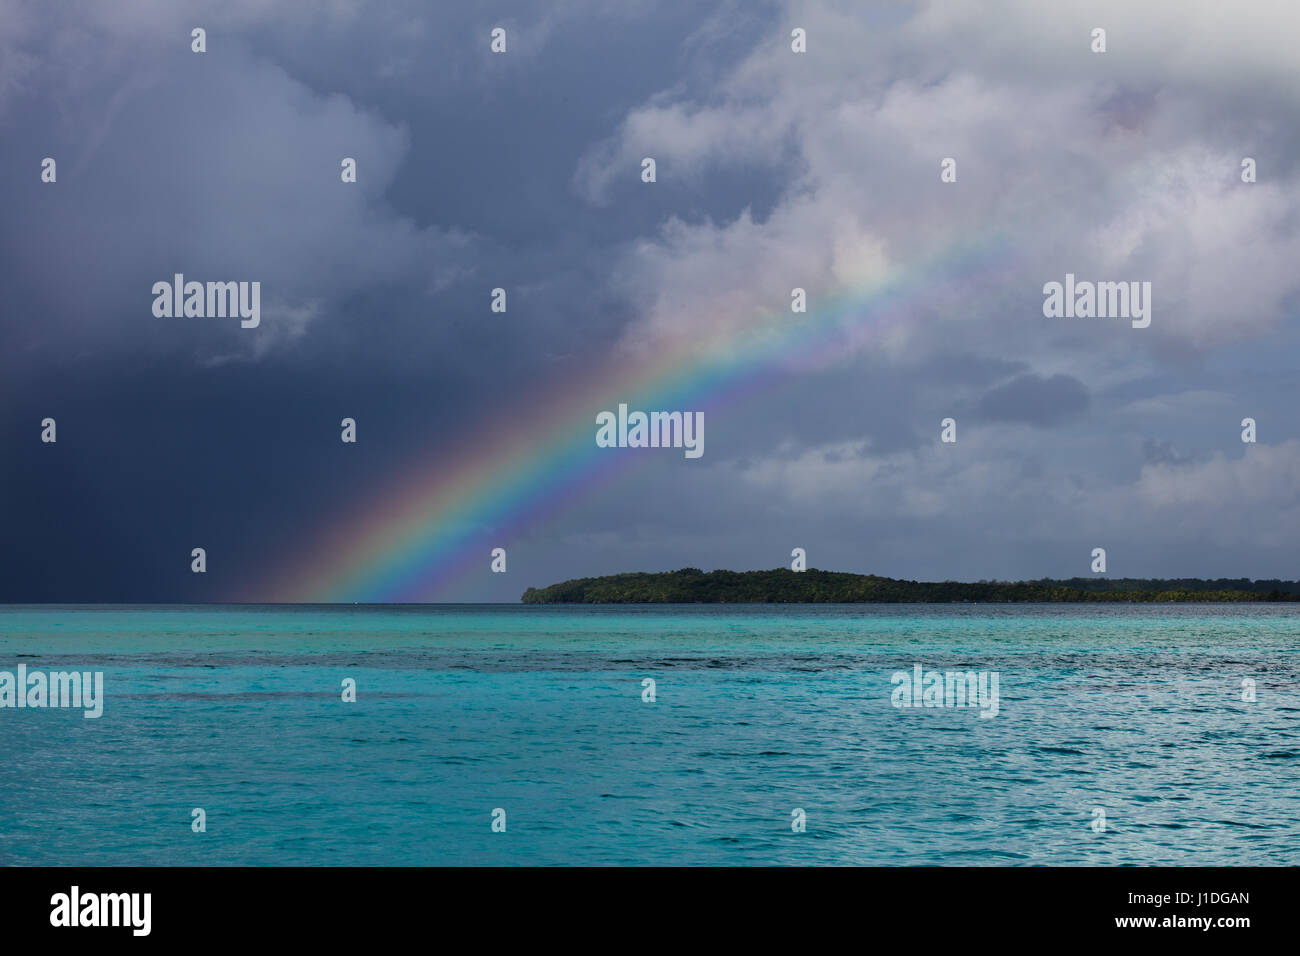 Ein schöner Regenbogen erscheint über tropische Lagune Wasser in die Republik Palau. Dieses mikronesischen Land ist ein beliebtes Urlaubsziel. Stockfoto